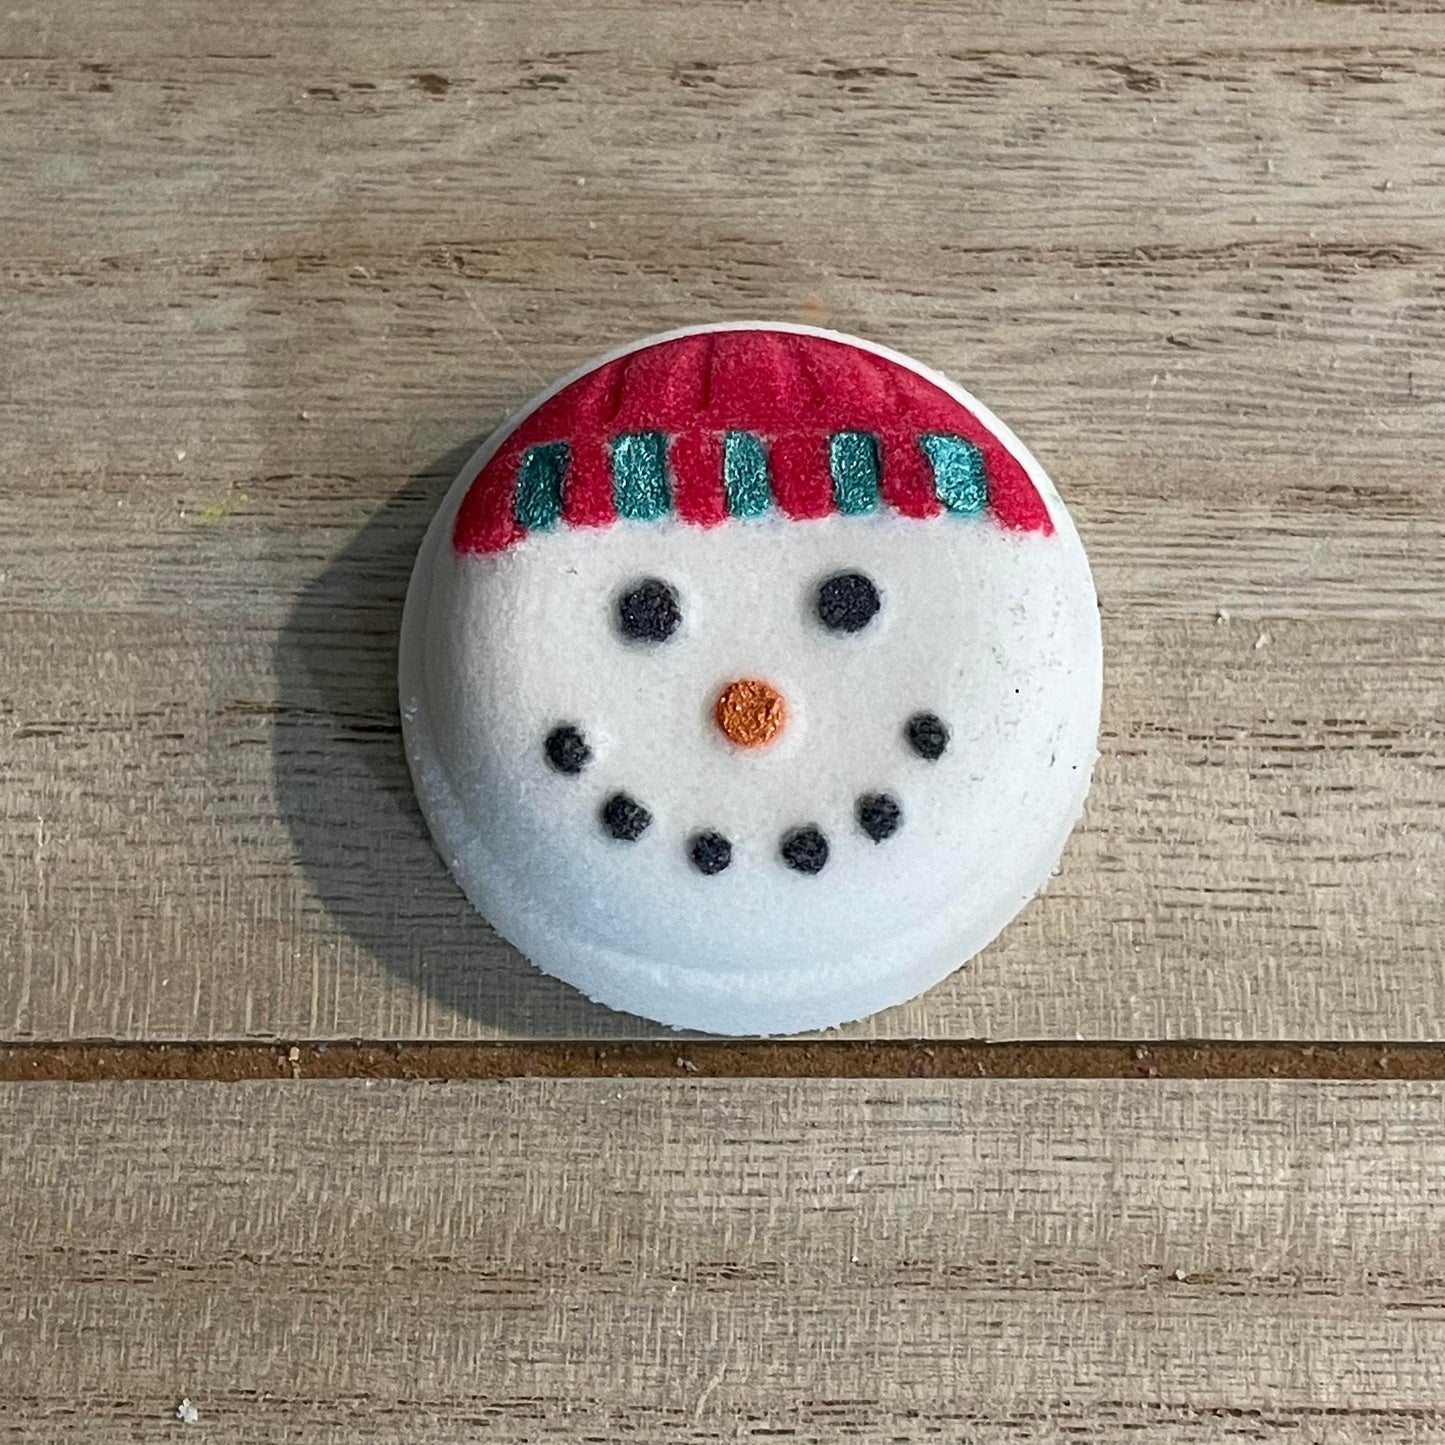 Snowman Button Face Hybrid Mold